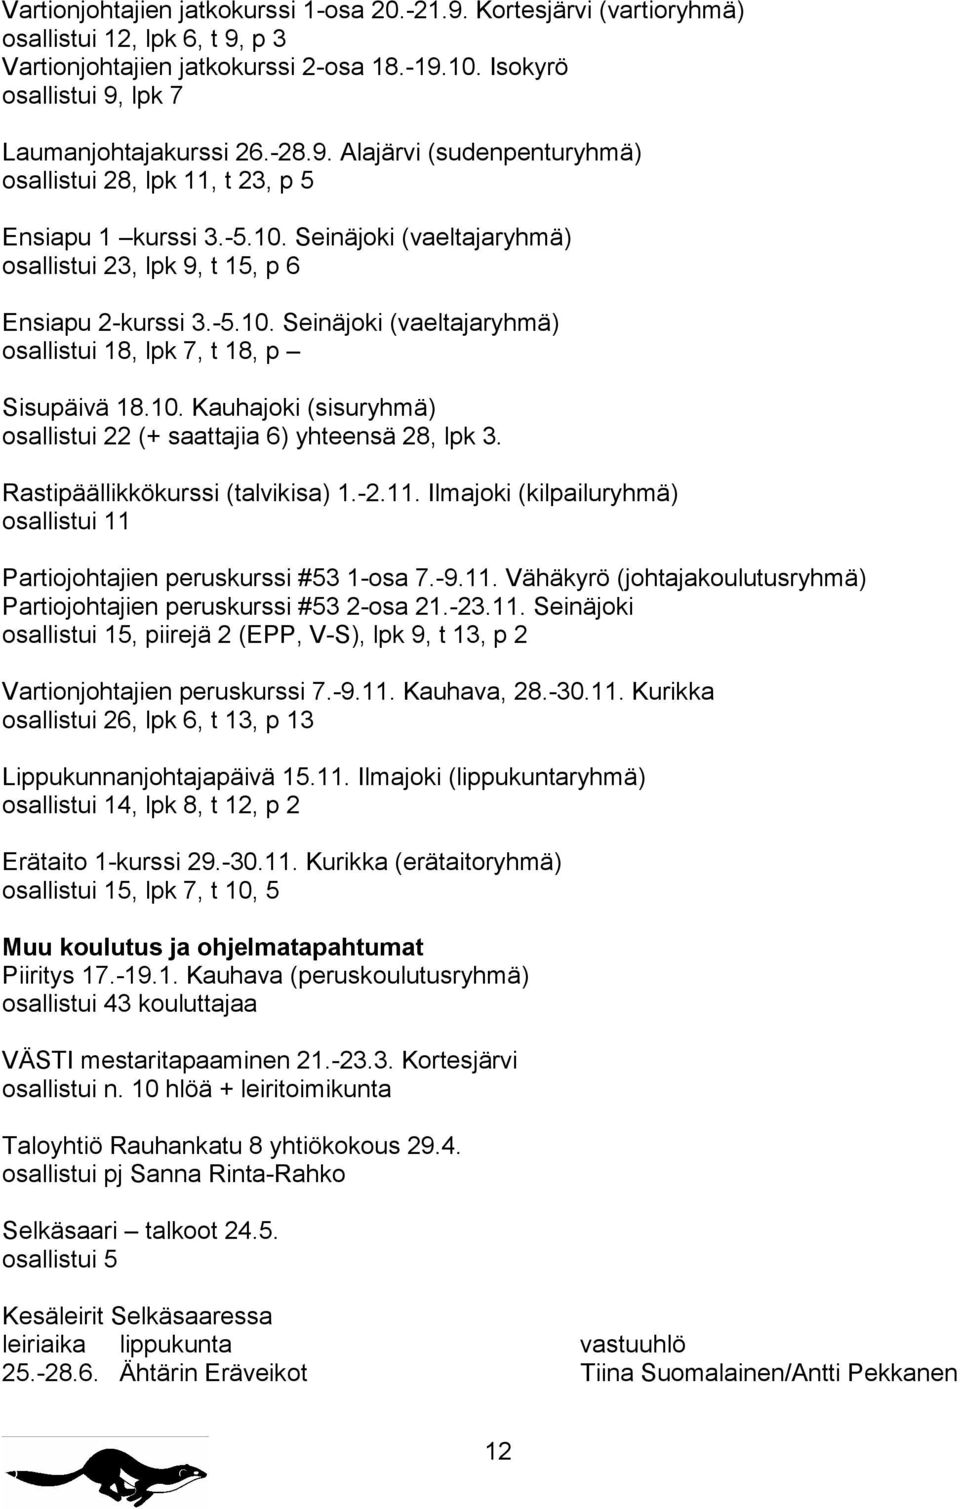 10. Kauhajoki (sisuryhmä) osallistui 22 (+ saattajia 6) yhteensä 28, lpk 3. Rastipäällikkökurssi (talvikisa) 1.-2.11. Ilmajoki (kilpailuryhmä) osallistui 11 Partiojohtajien peruskurssi #53 1-osa 7.-9.